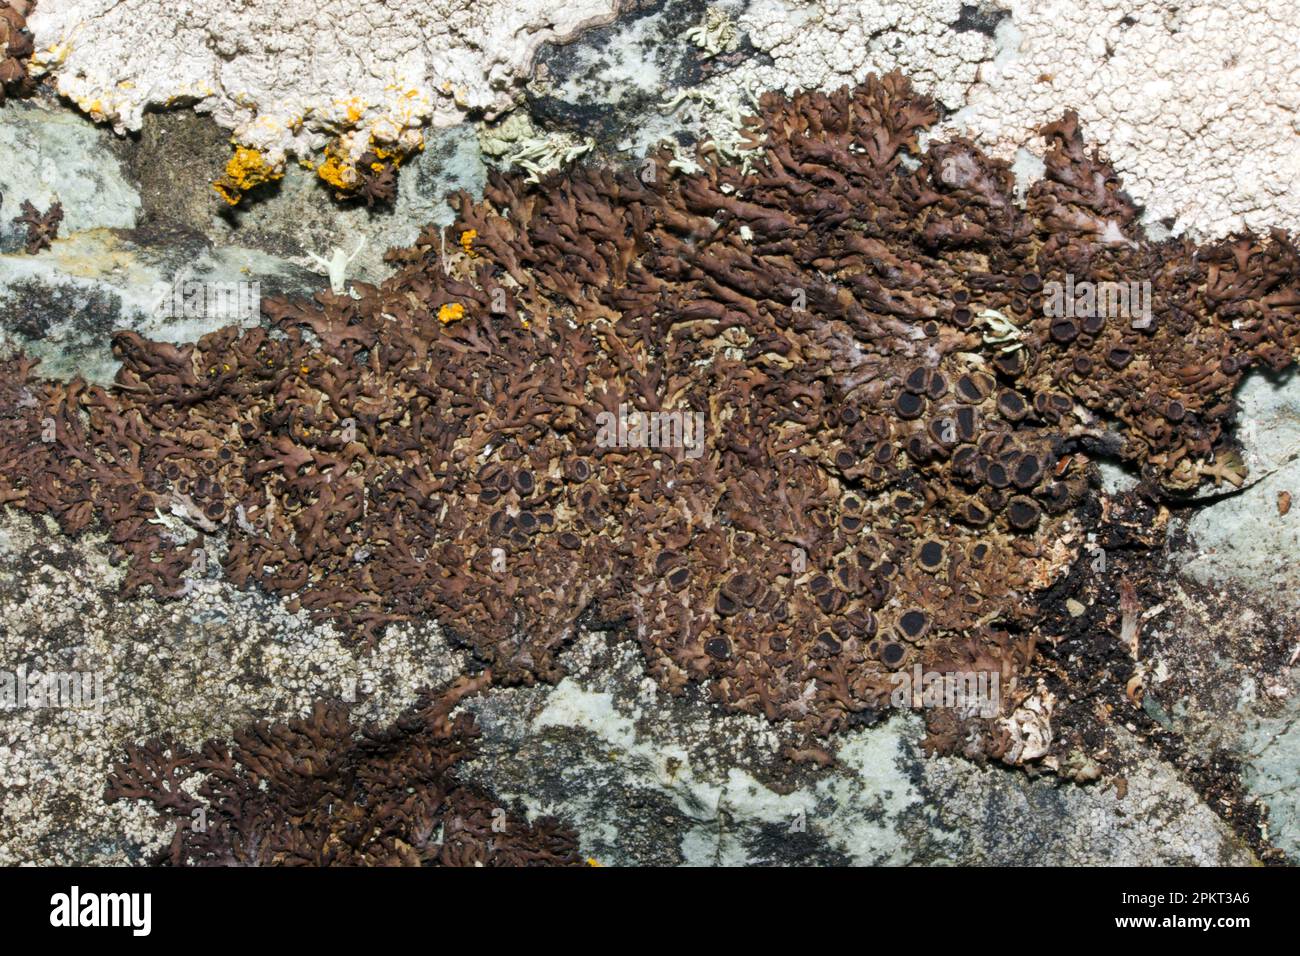 Anaptychia runcinata (liquen folioso) se encuentra en las rocas costeras principalmente en las costas norte y oeste. Es originaria de Europa y América del Norte. Foto de stock